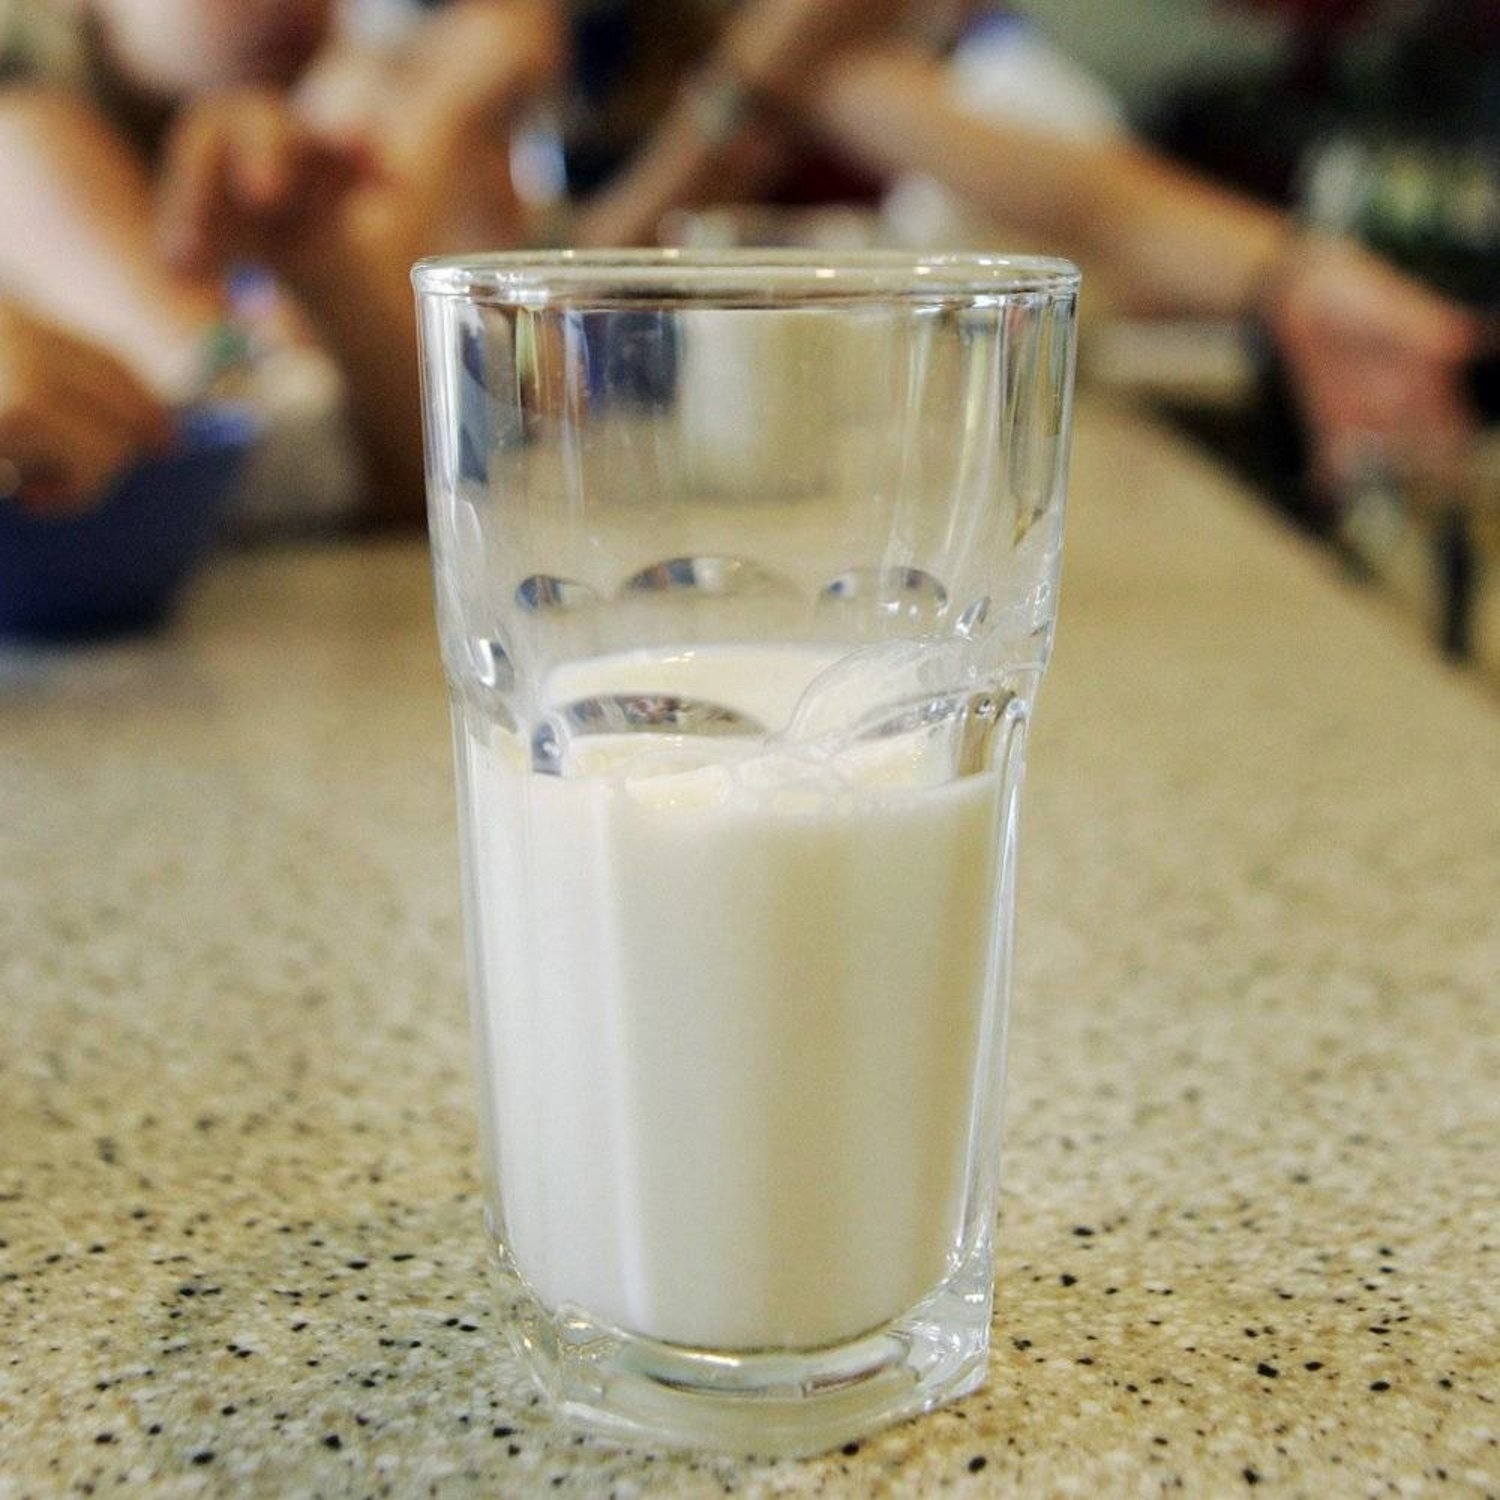 دراسة: الحليب أكثر ترطيباً للجسم من الماء